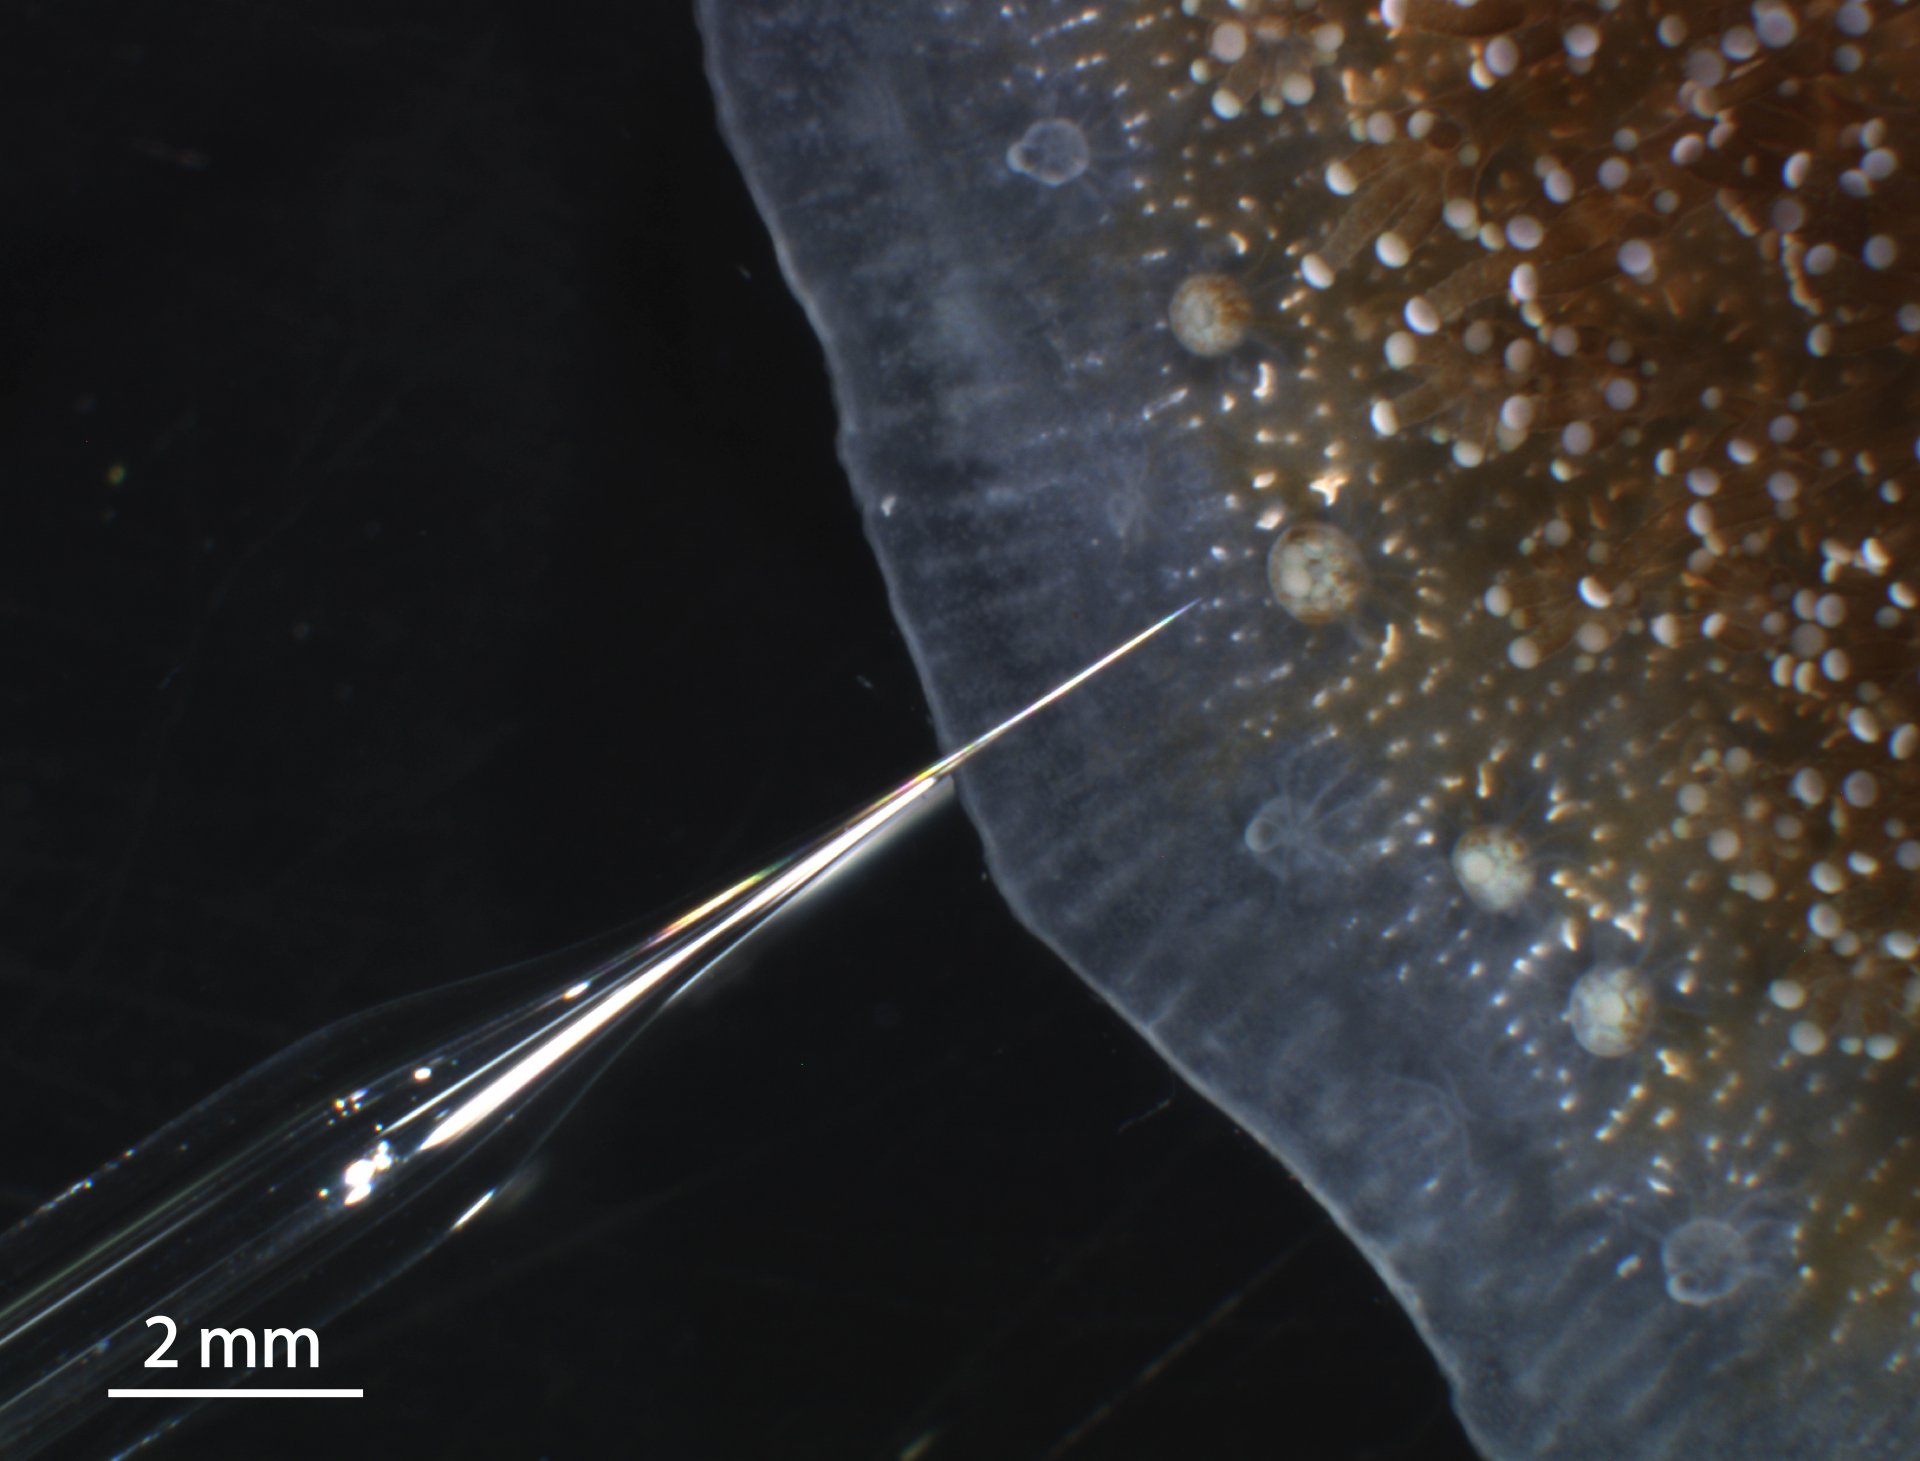 Mikrokolonie der Koralle Stylophora pistillata, auch Griffelkoralle genannt, mit Mikrosensor